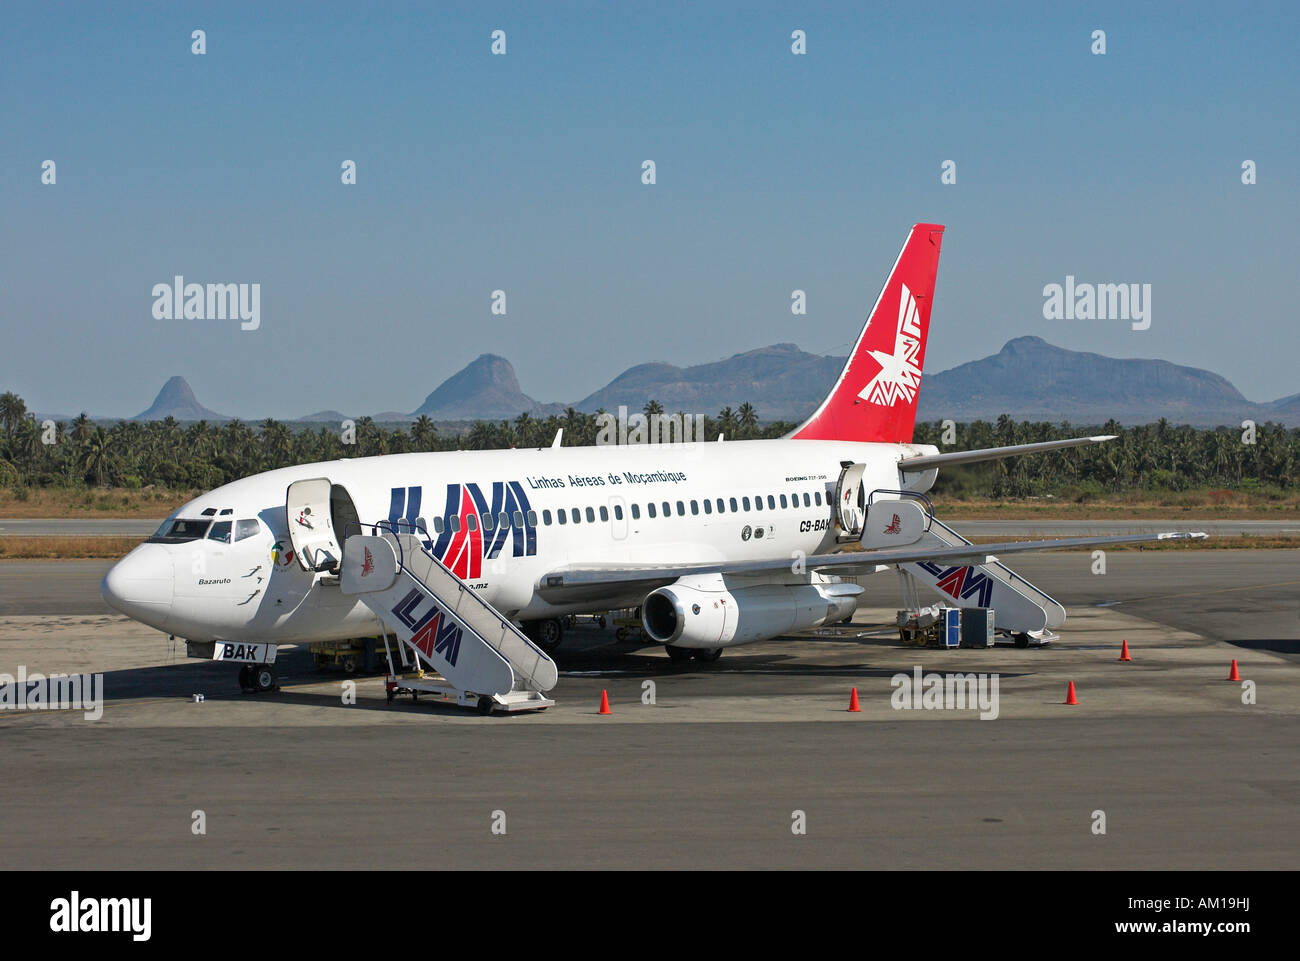 Airplane of LAM (Linhas Aereas de Mozambique), Mozambique, Africa Stock Photo